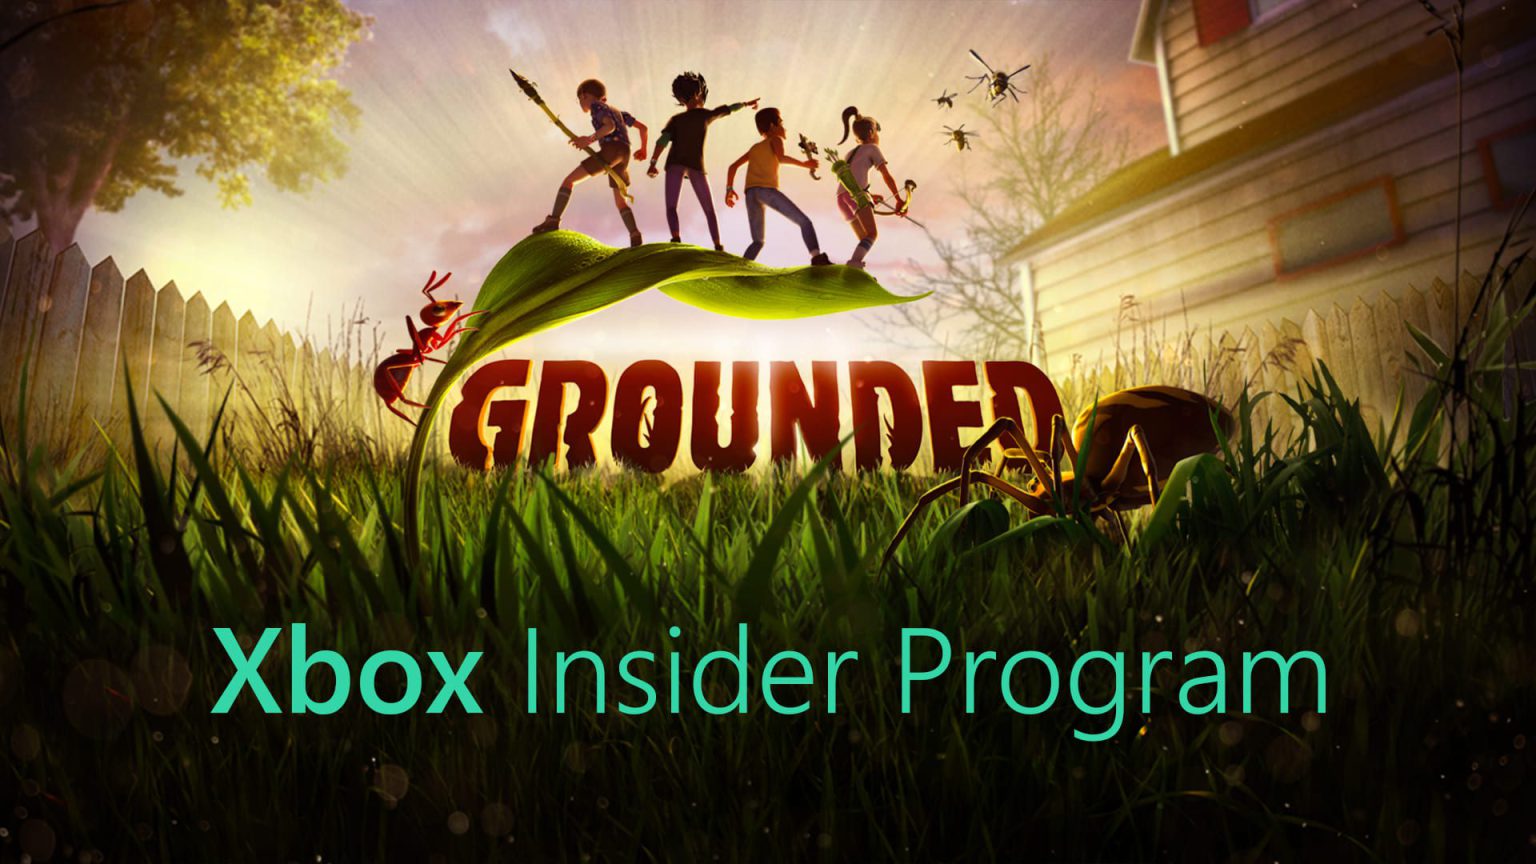 Grounded con Xbox Insider Program en la parte inferior